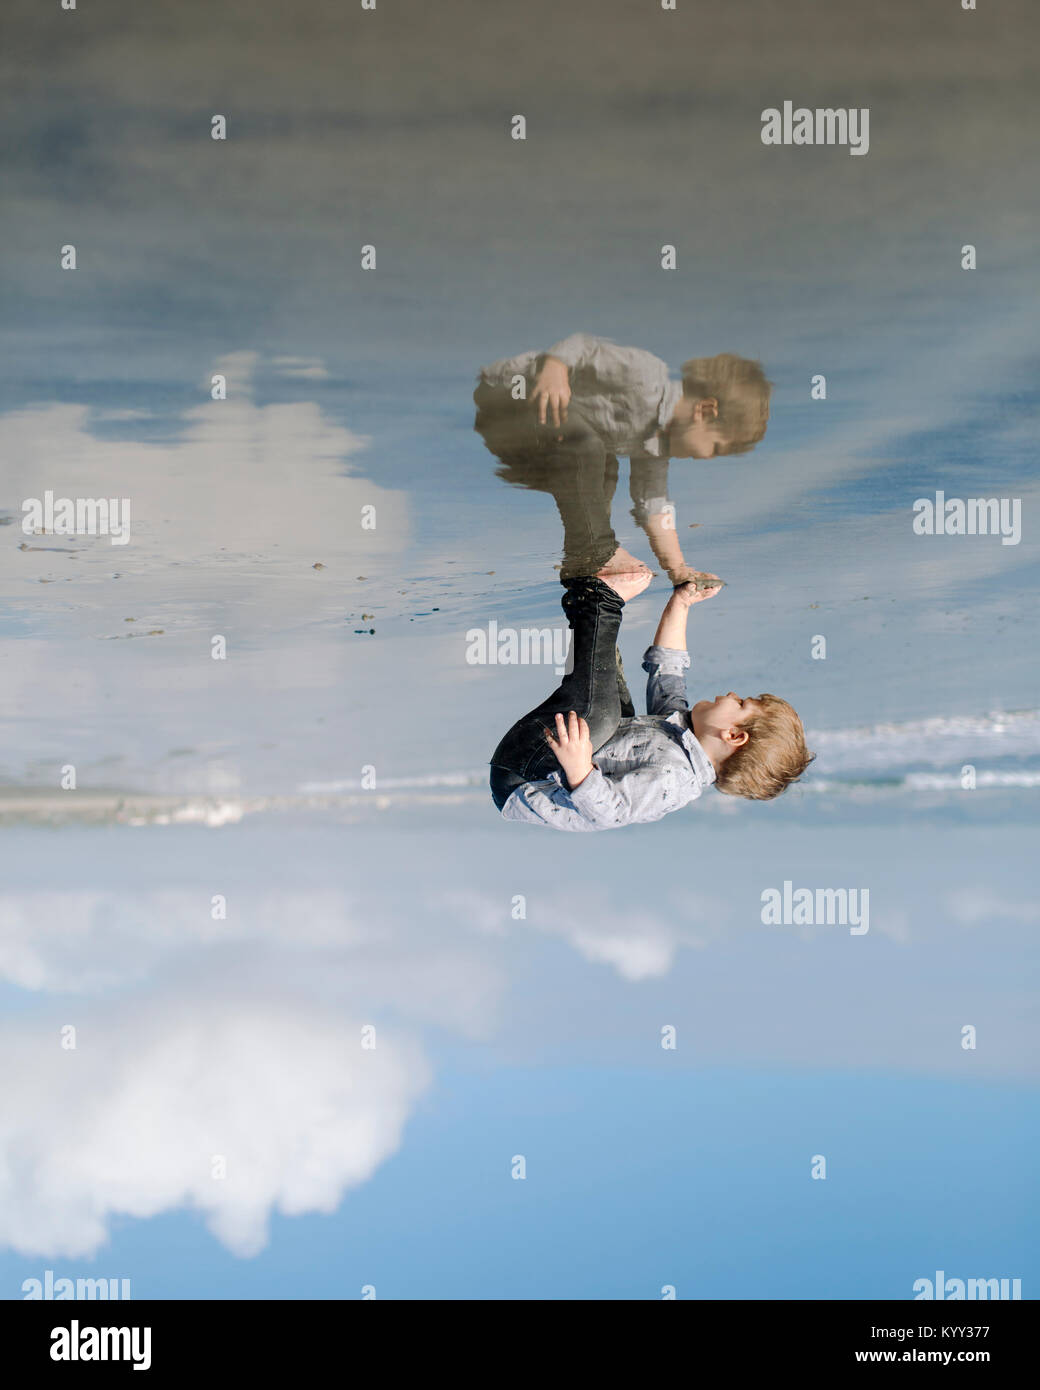 L'envers de l'image Garçon jouant sur le rivage à Beach against cloudy sky Banque D'Images